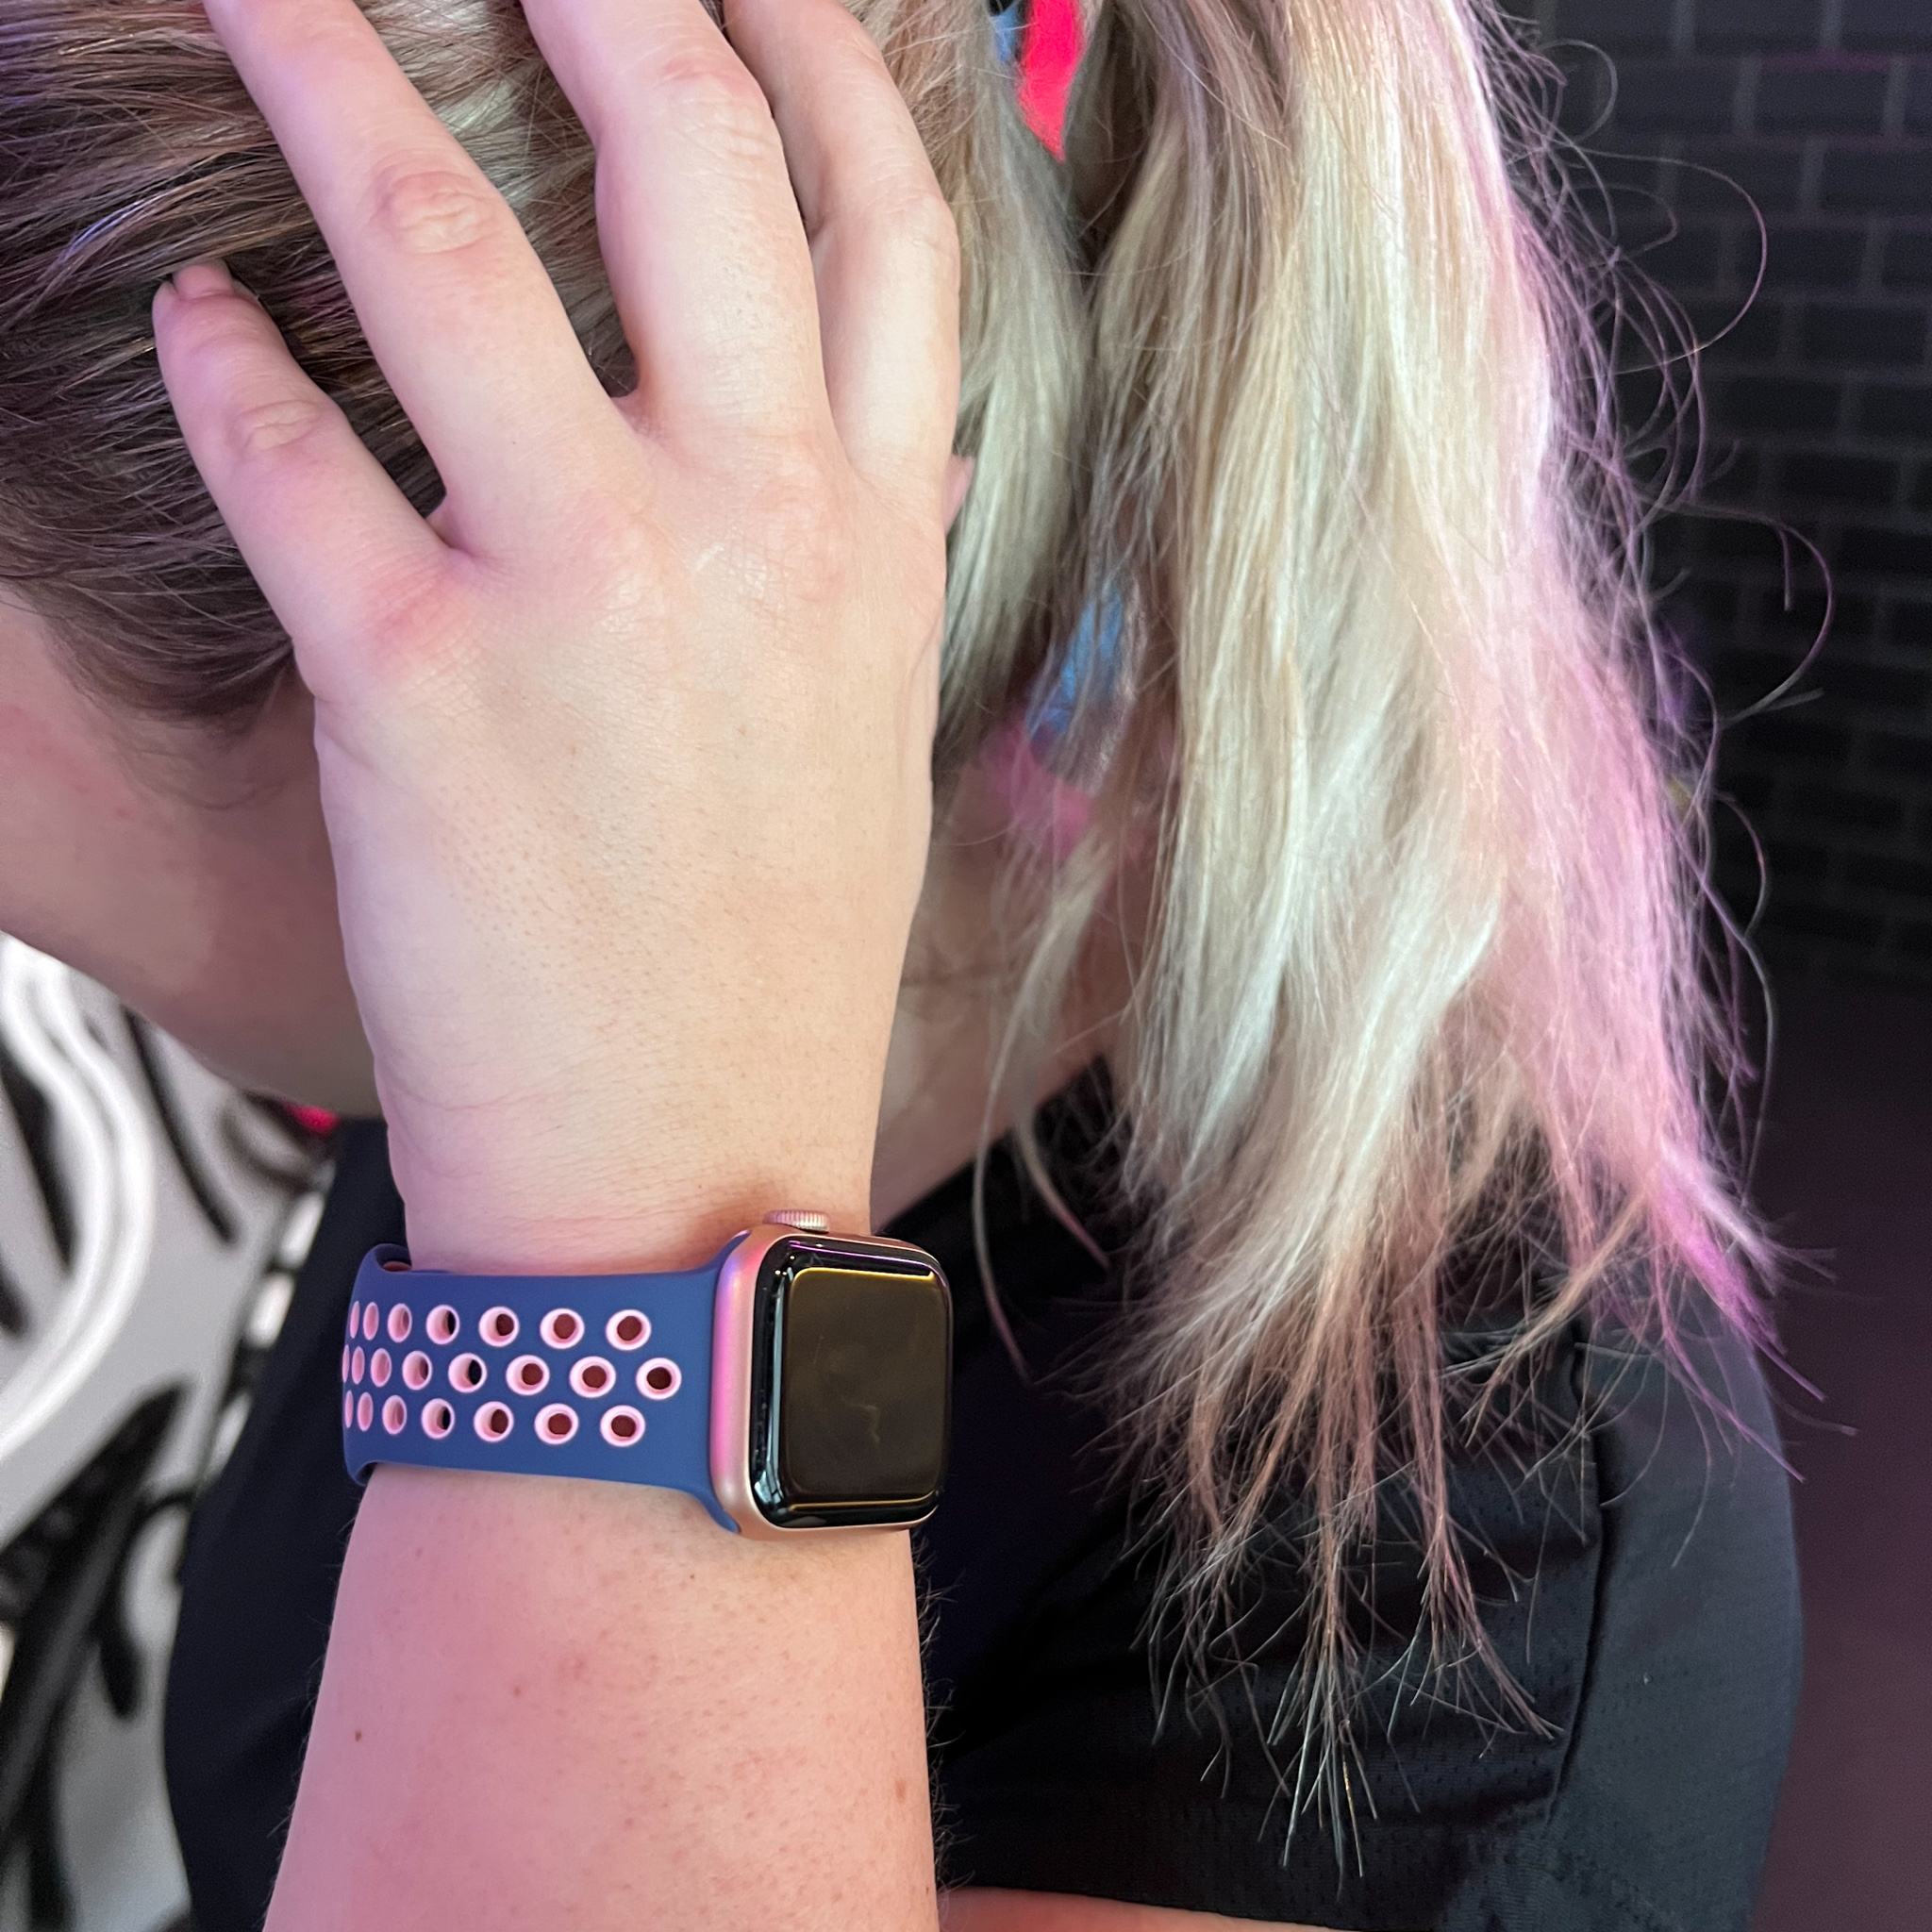 Apple Watch dubbel sport band - blauw roze